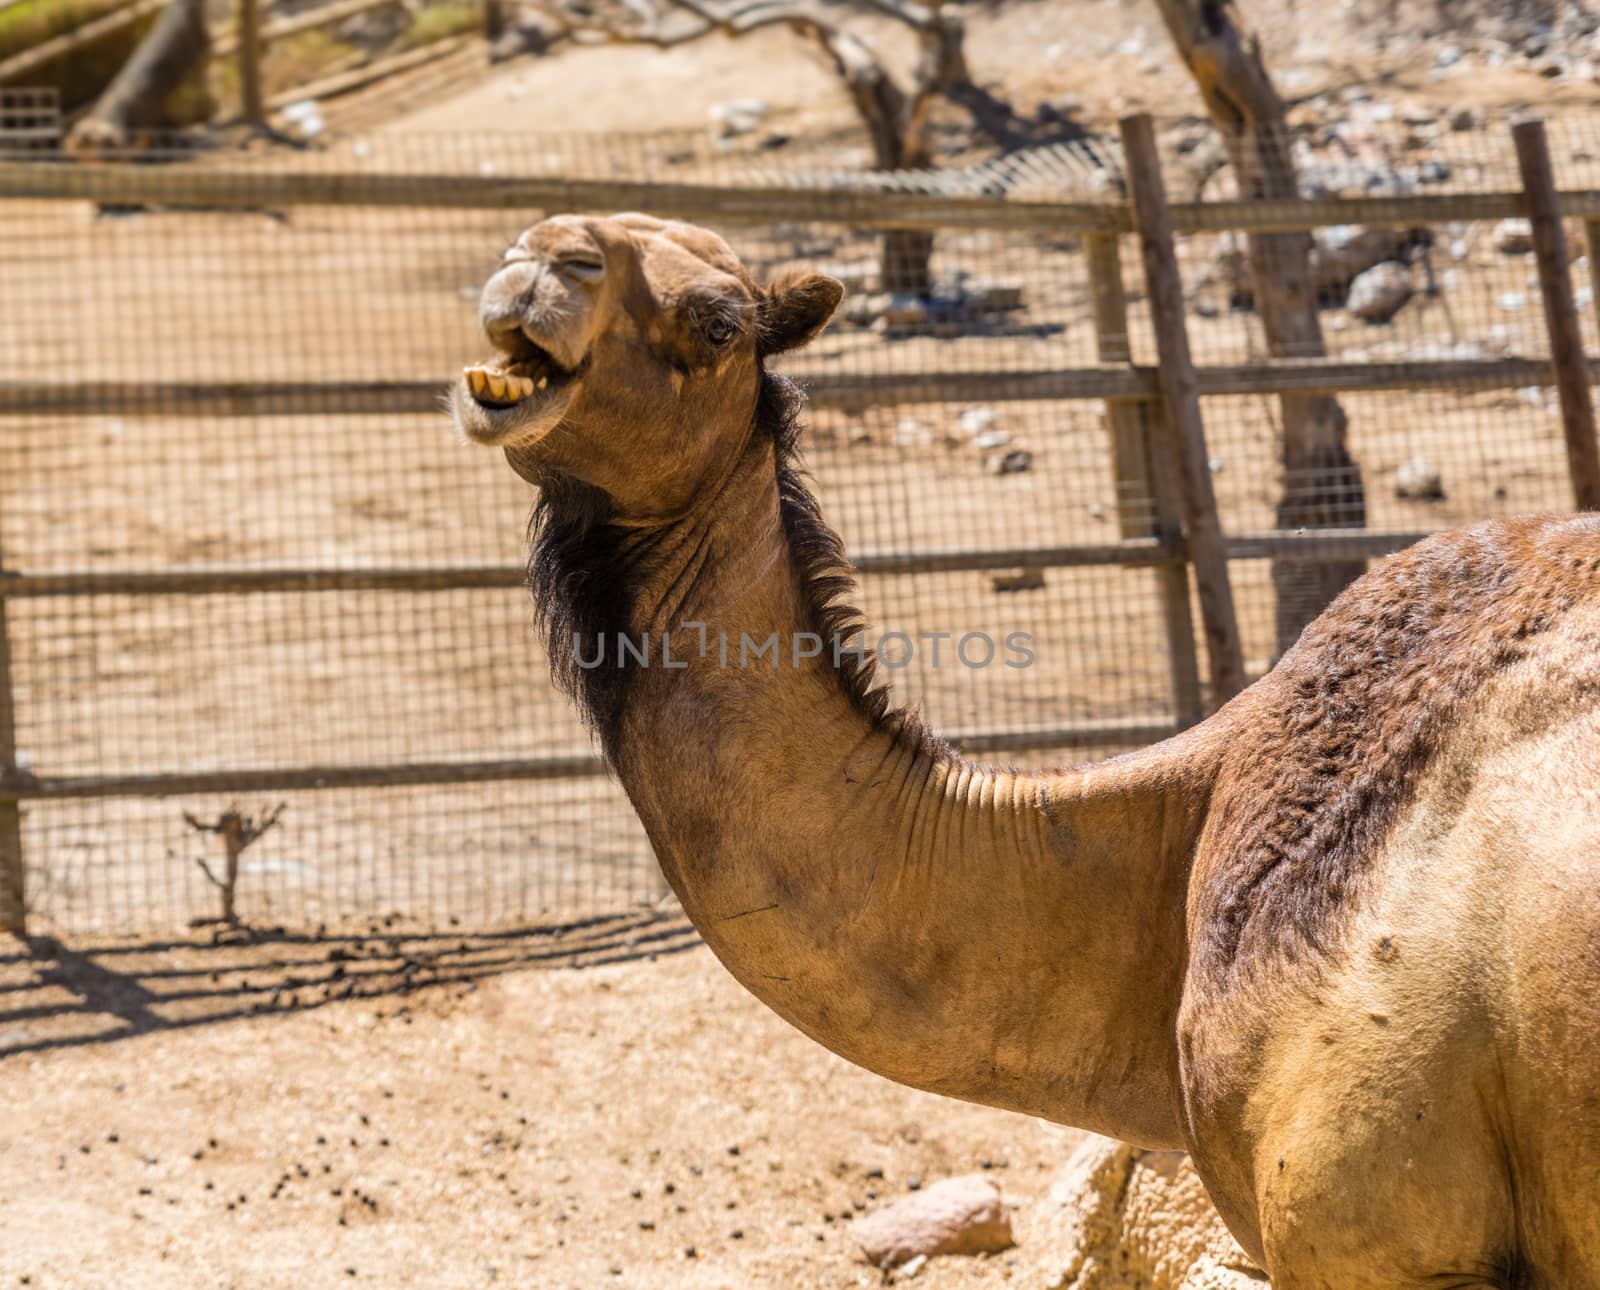 camels smiling